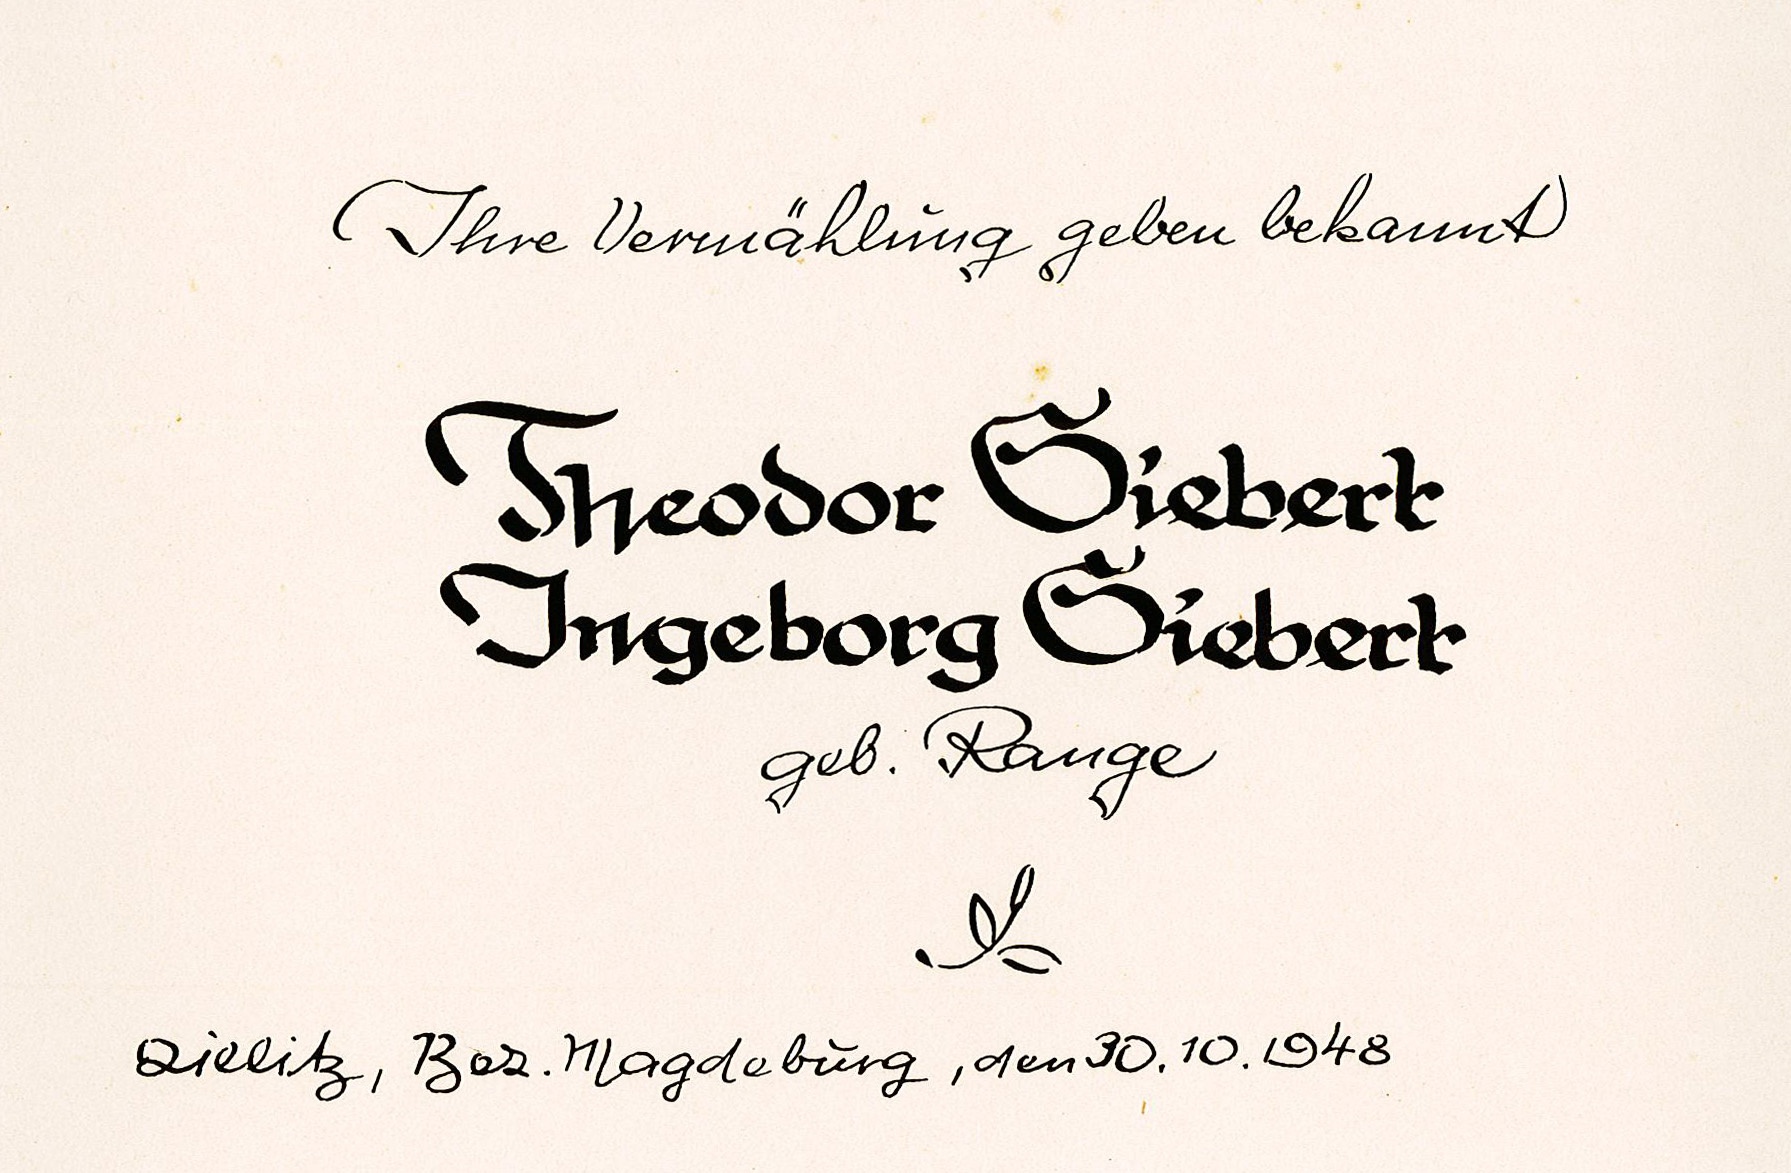 Hochzeitskarte von Ingeborg Range und Theodor Siebert, 30. Oktober 1948 (Museum Wolmirstedt RR-F)